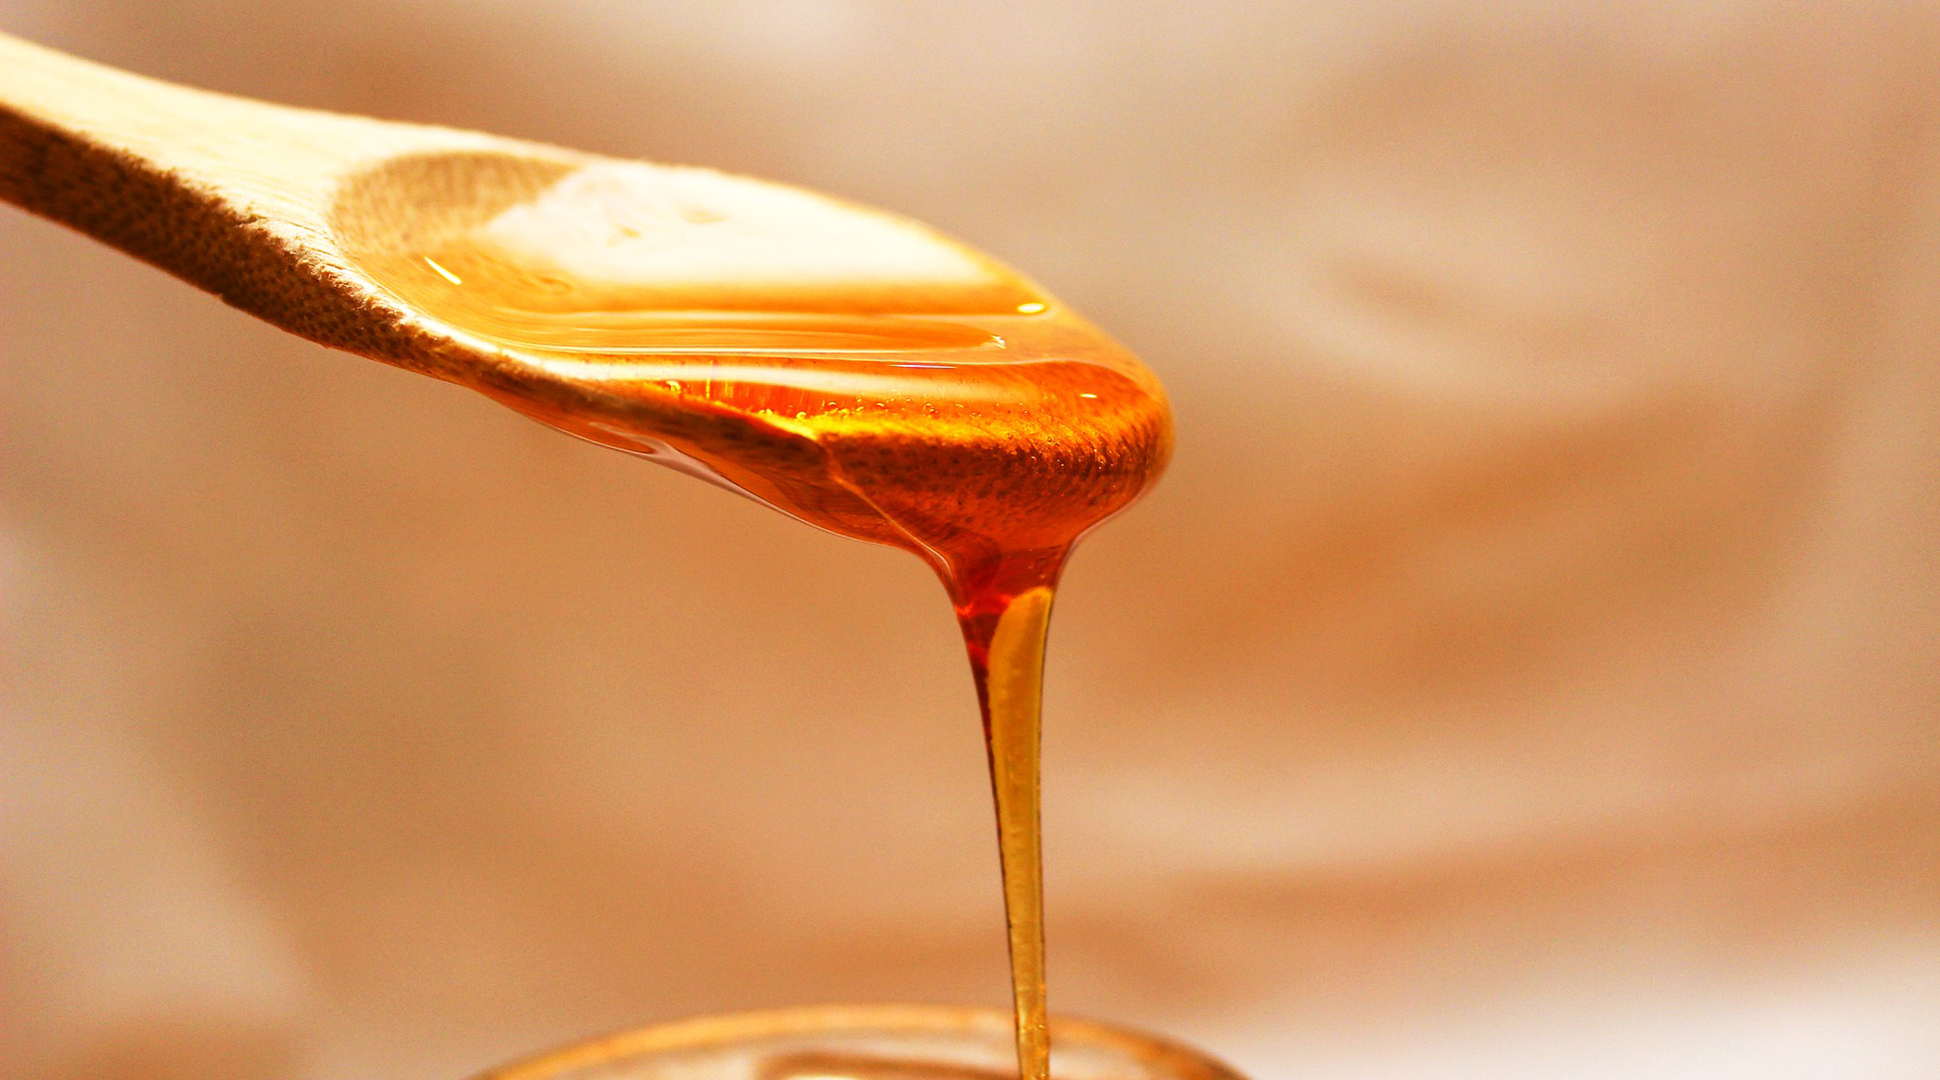 Is honey added sugar?